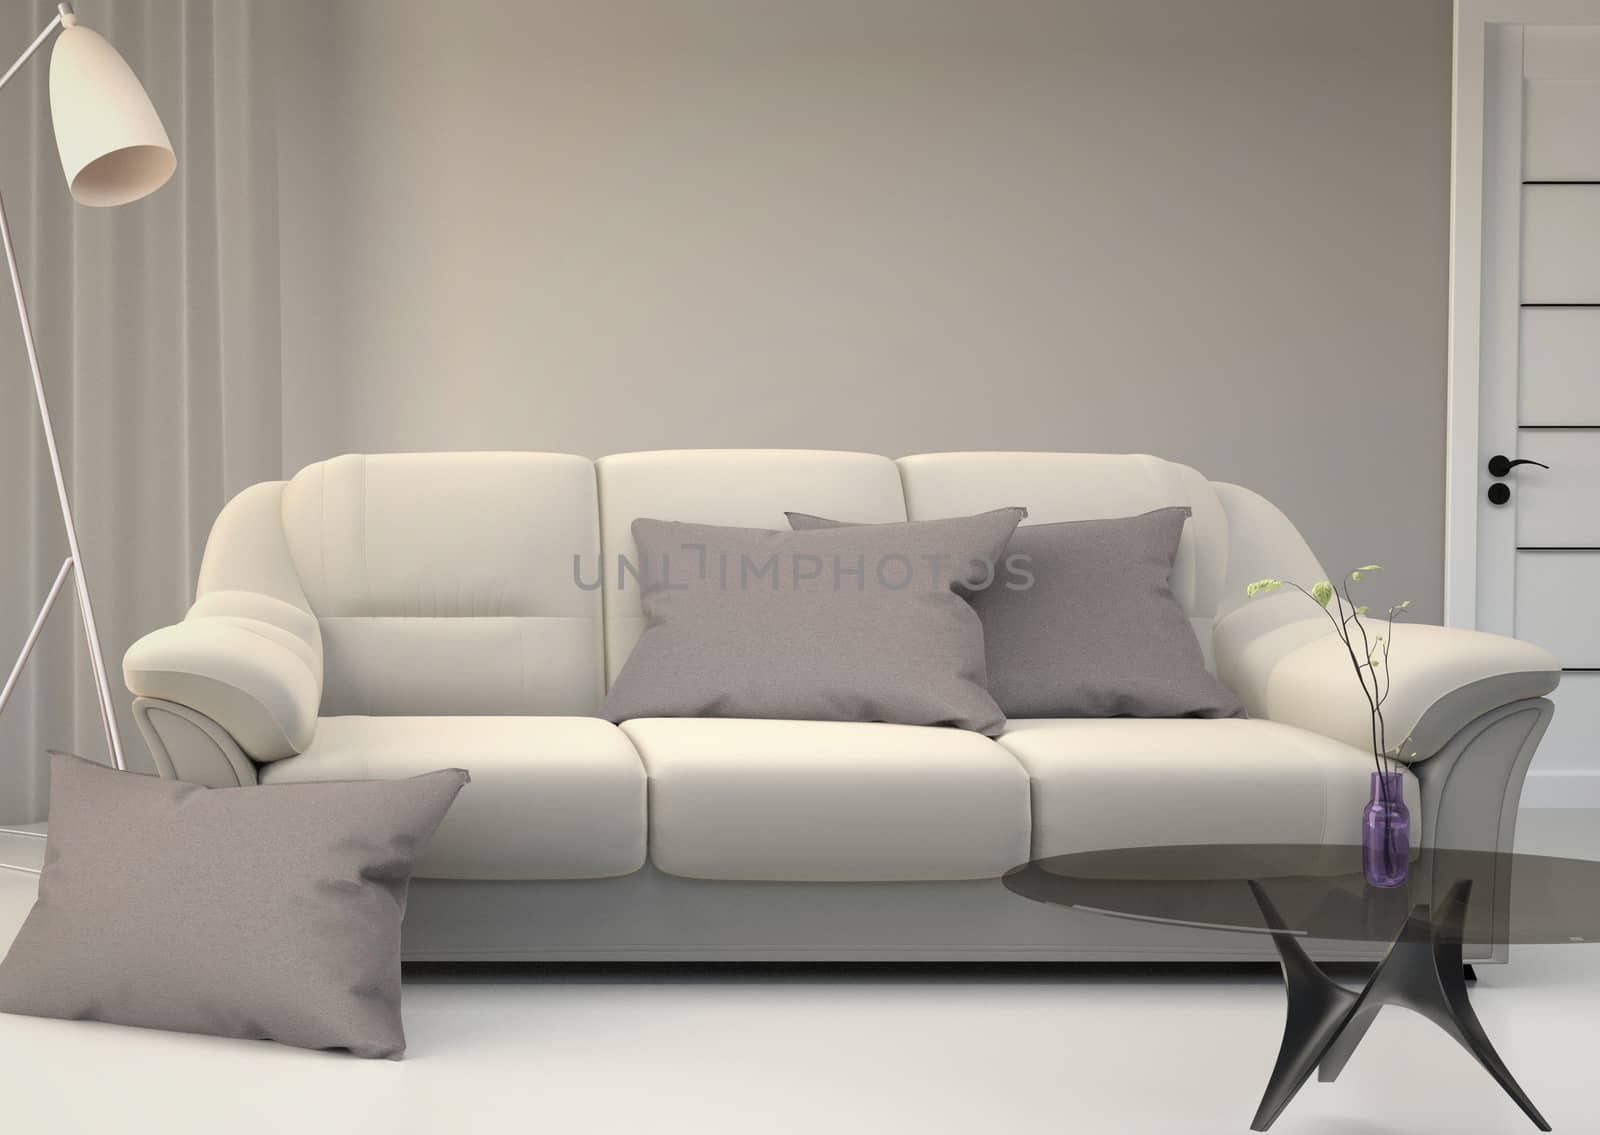 Living Room Interior Scandinavian style. 3D rendering